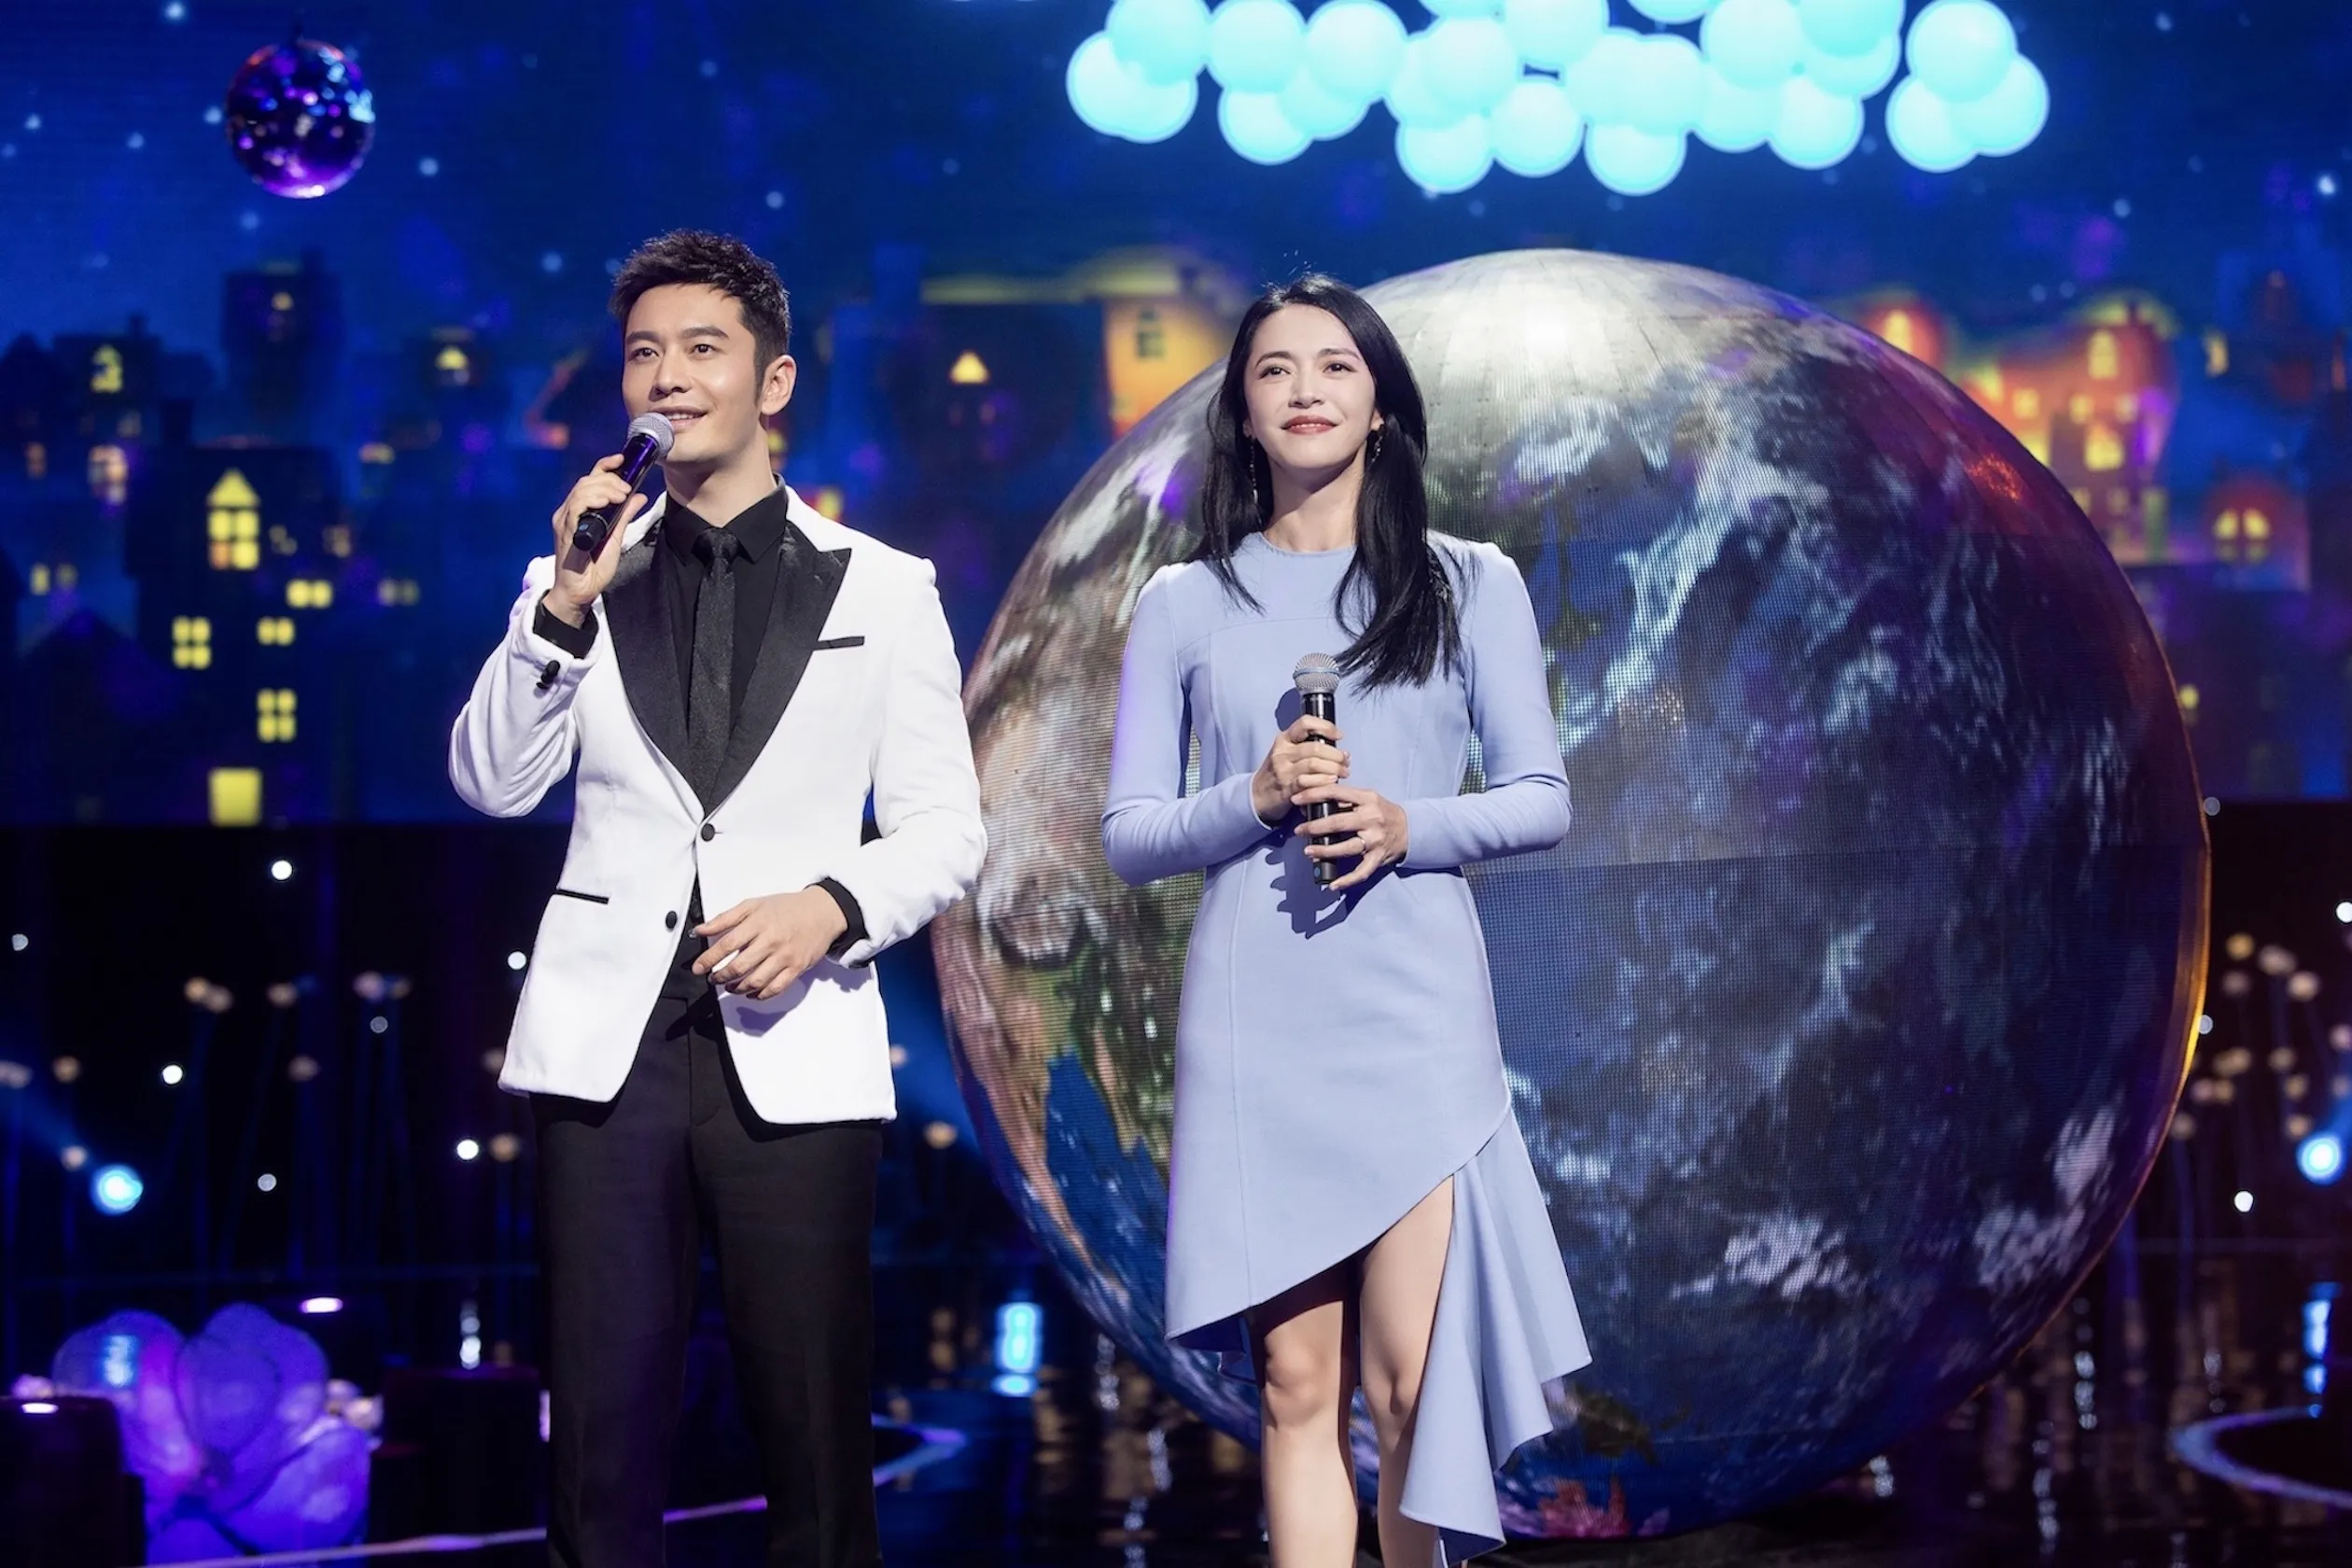  Xiaoming Huang 参加“爱的接力”电影频道公益盛典-与 Yao Chen 合唱《星光》.JPG